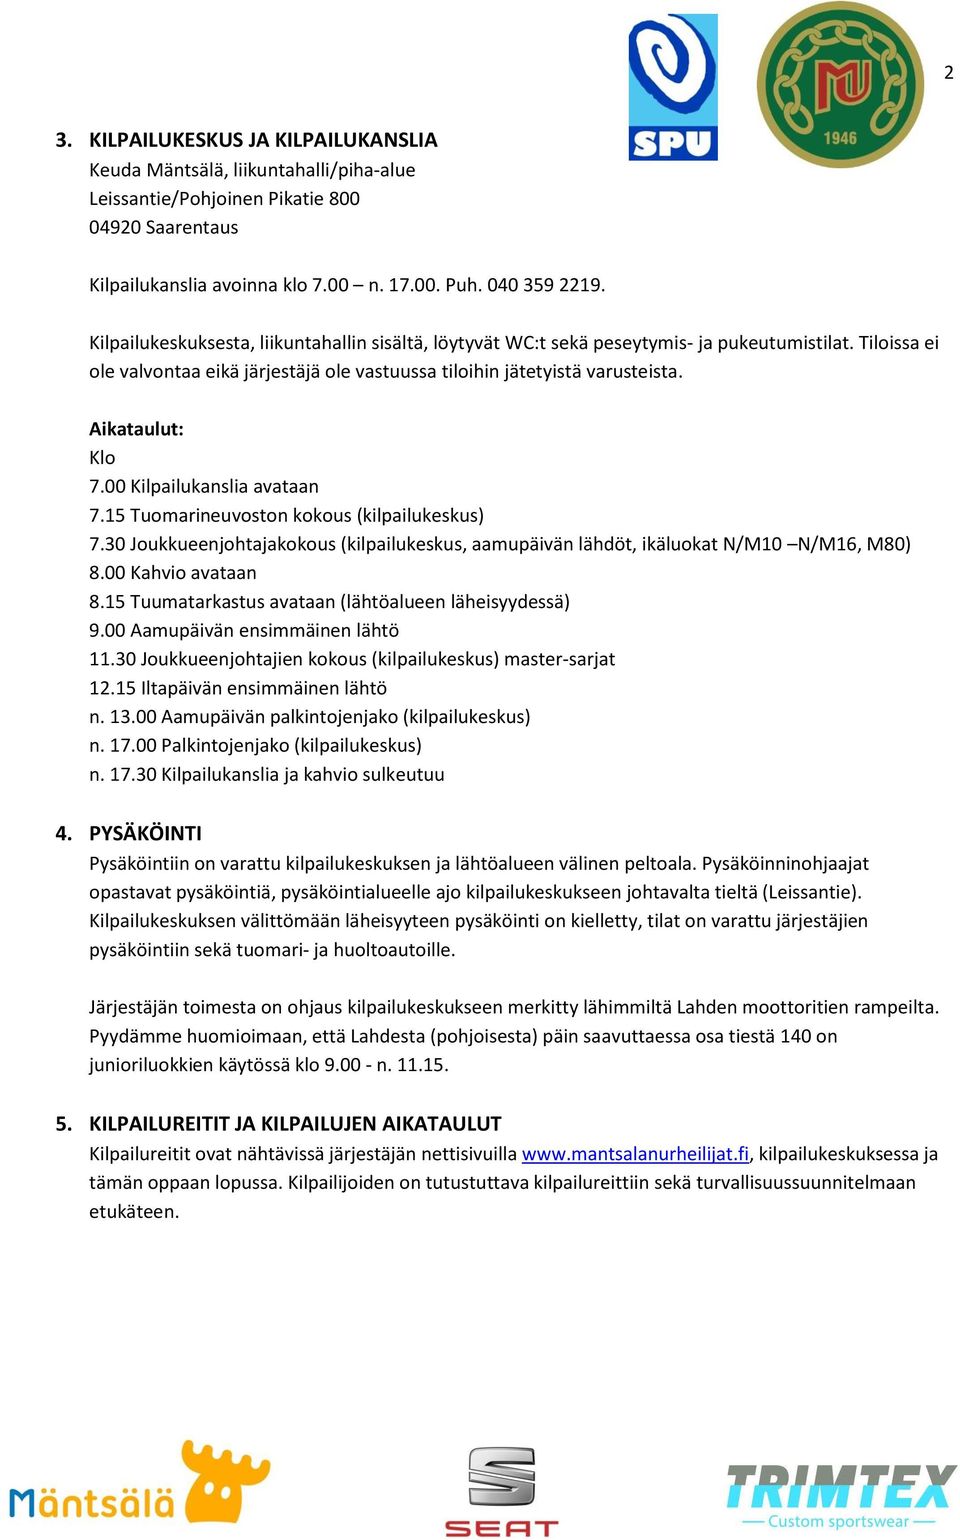 Aikataulut: Klo 7.00 Kilpailukanslia avataan 7.15 Tuomarineuvoston kokous (kilpailukeskus) 7.30 Joukkueenjohtajakokous (kilpailukeskus, aamupäivän lähdöt, ikäluokat N/M10 N/M16, M80) 8.